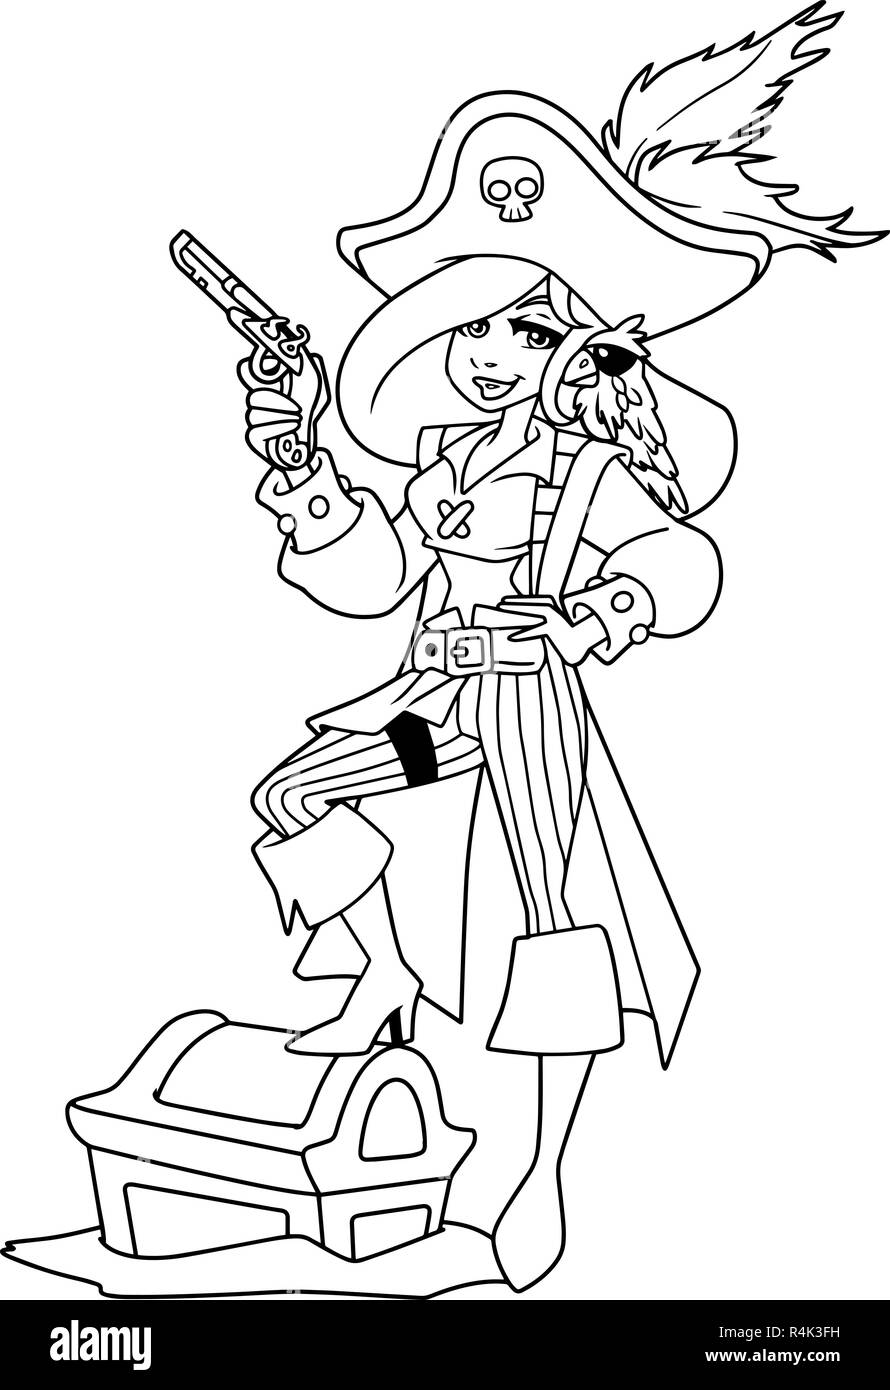 Pirate Girl Illustration Line Art Stock Vector